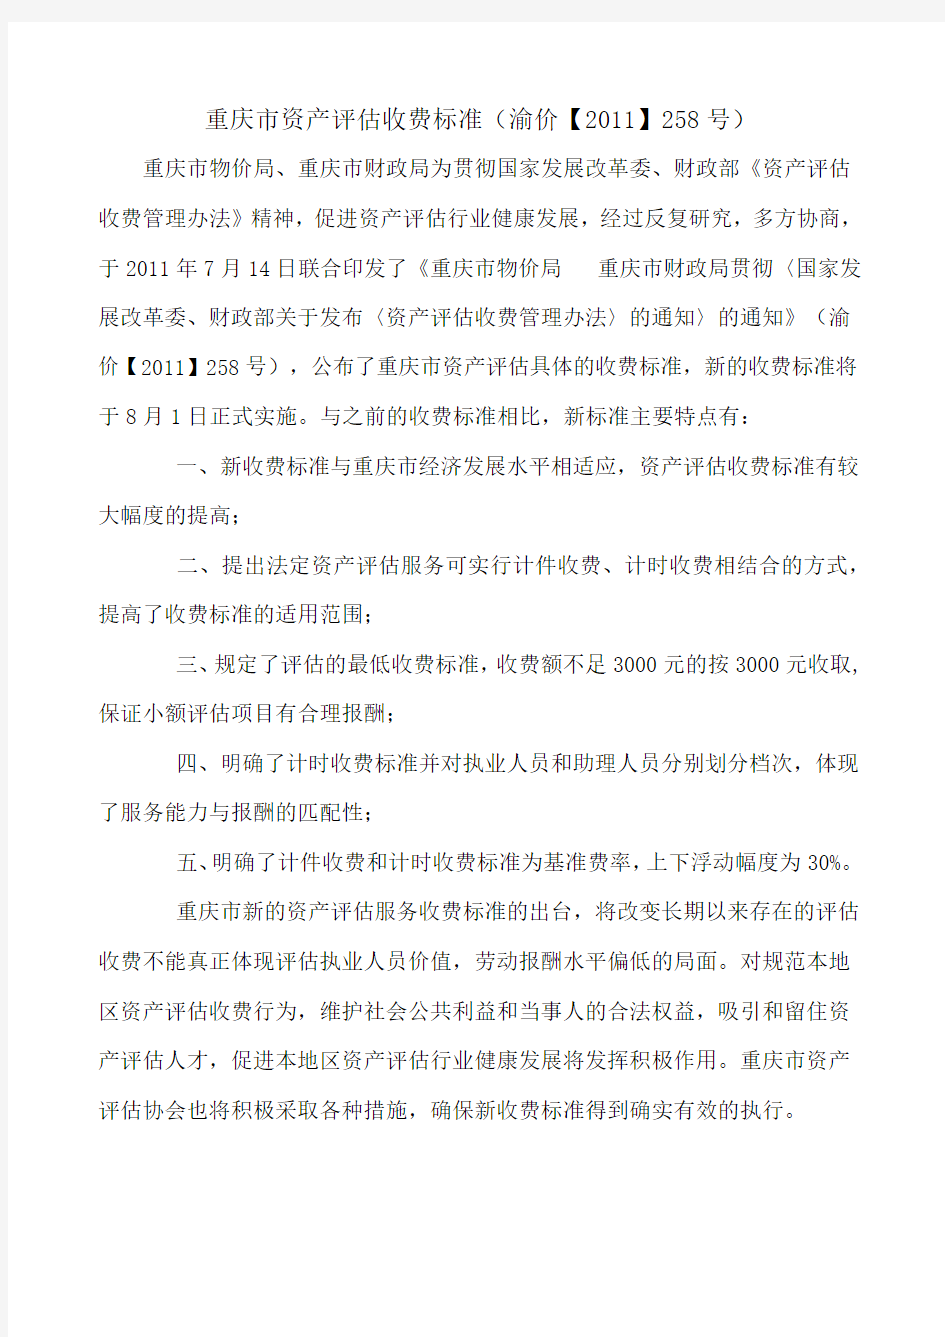 渝价[2011]258号--重庆市资产评估收费标准